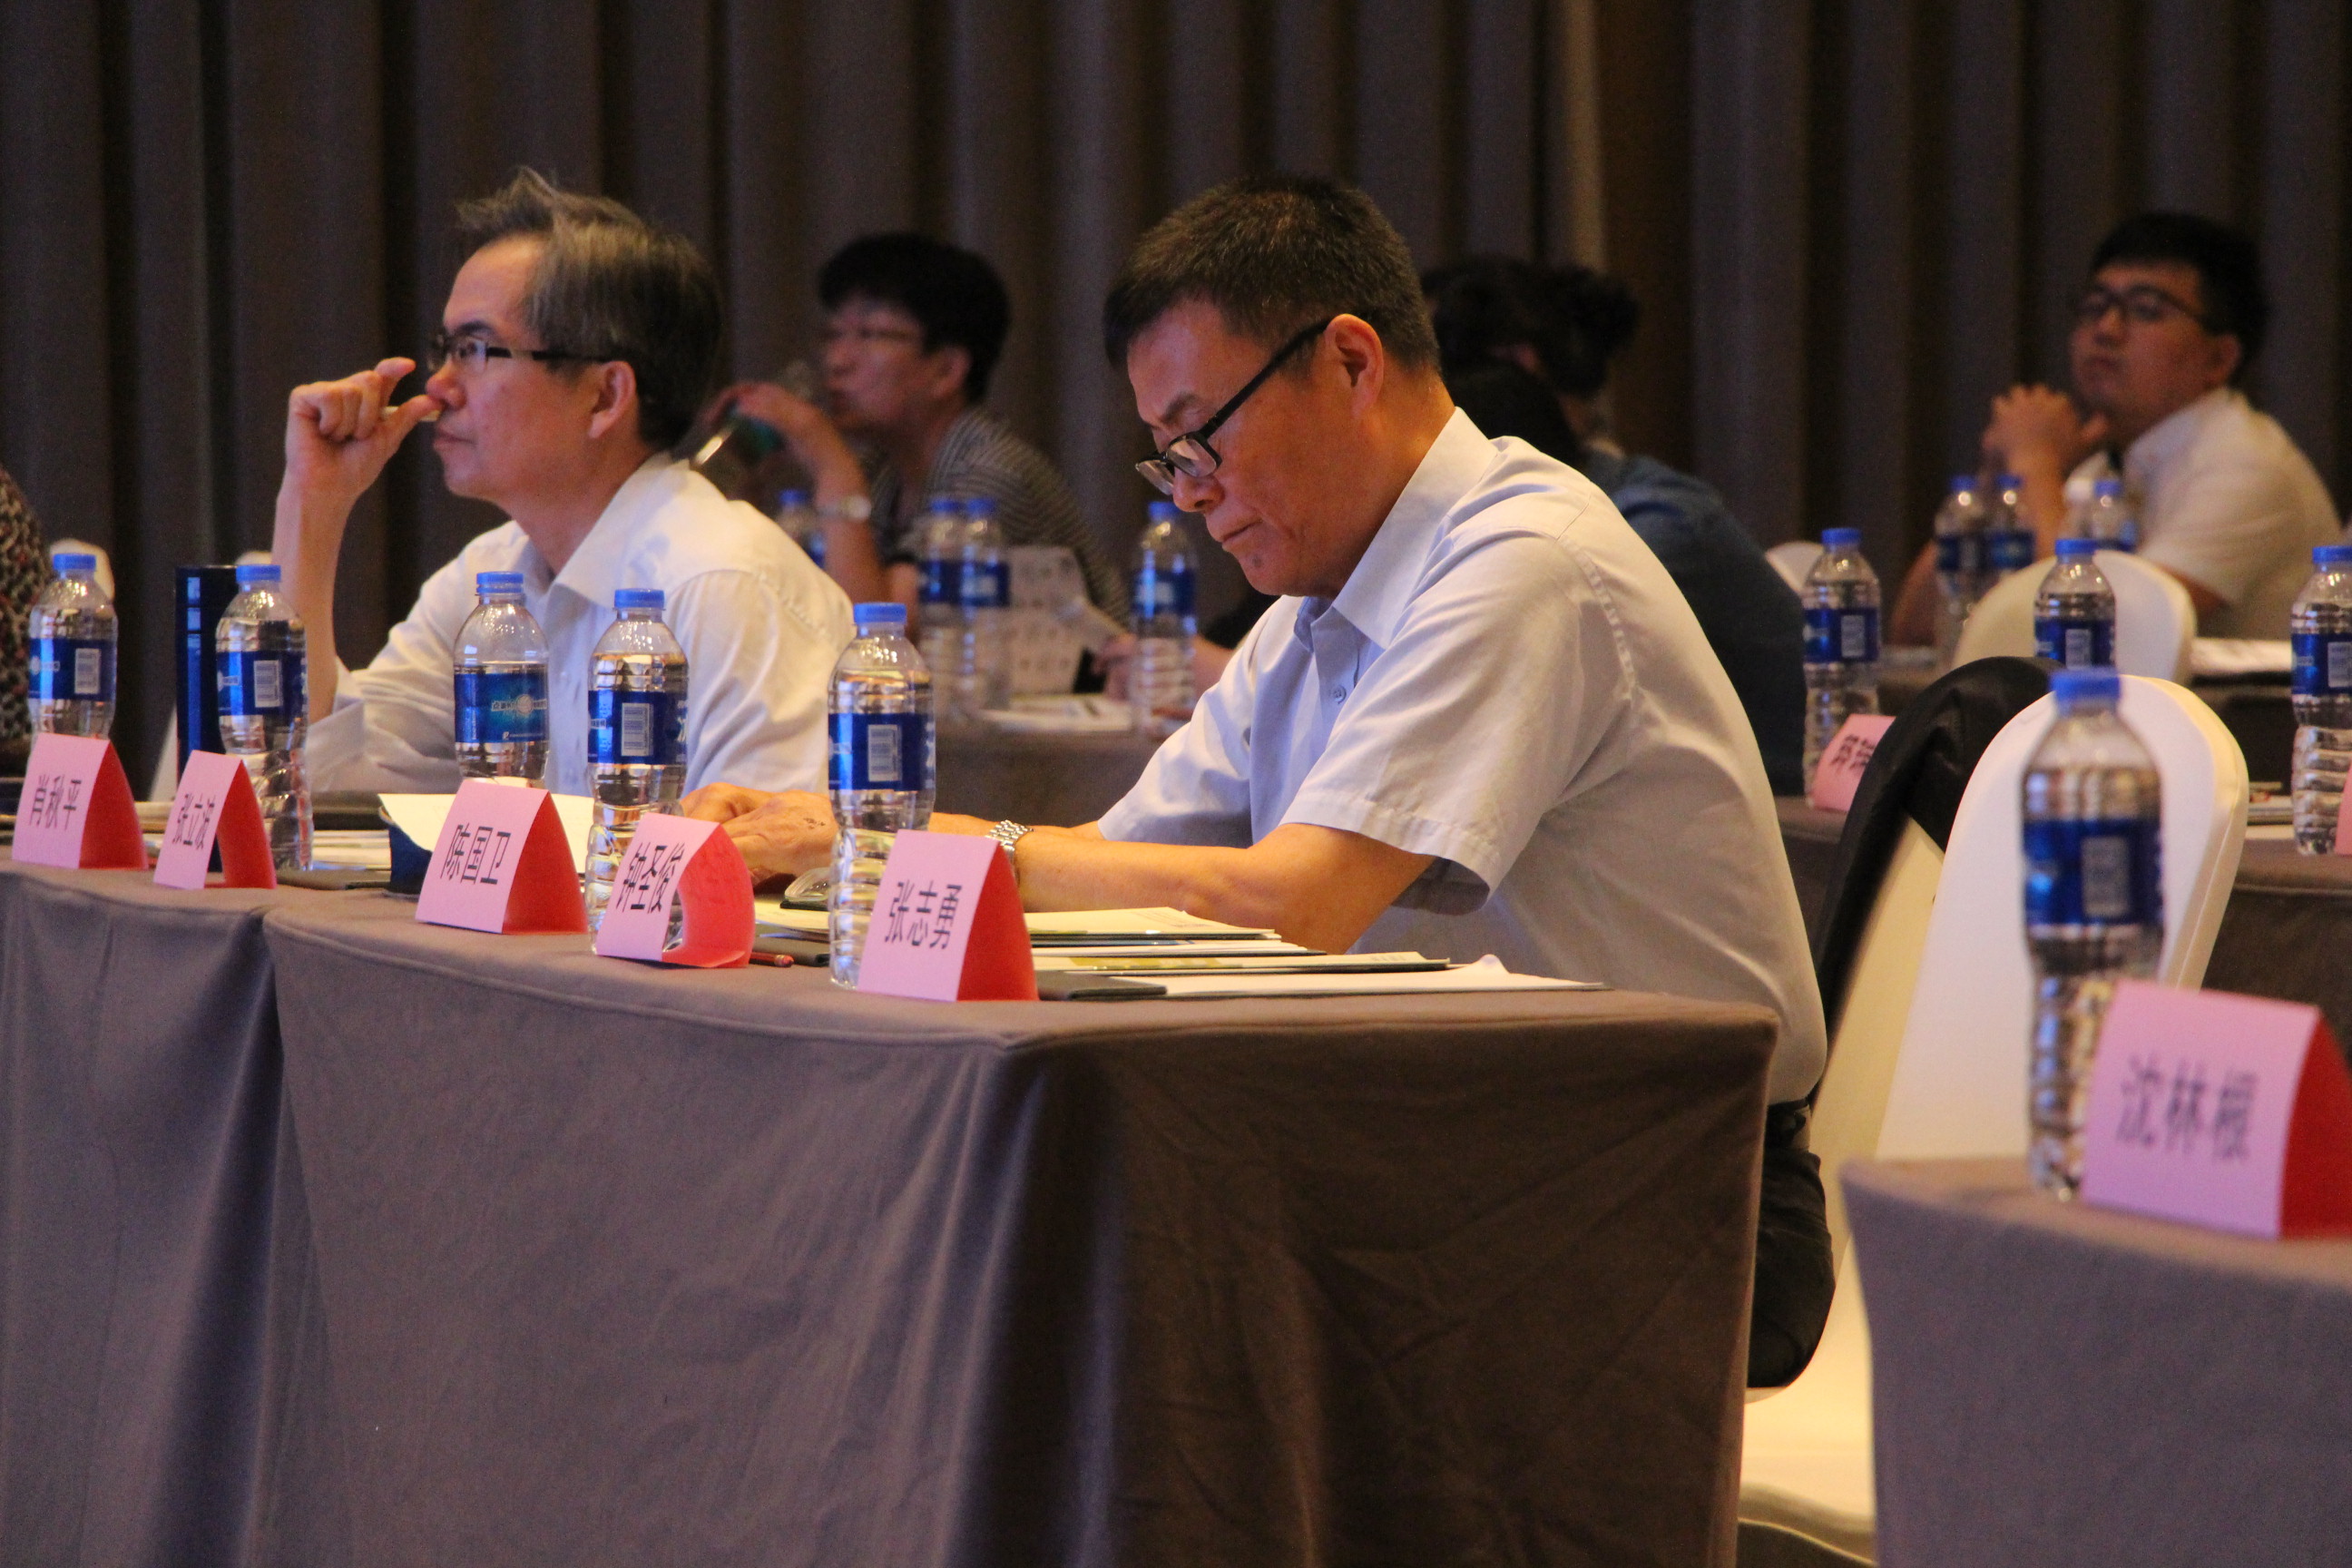 我司于2019年6月16日到18日积极参与并支持上海铸造协会组织的《有色铸造企业涉爆安全防控工作会议》活动